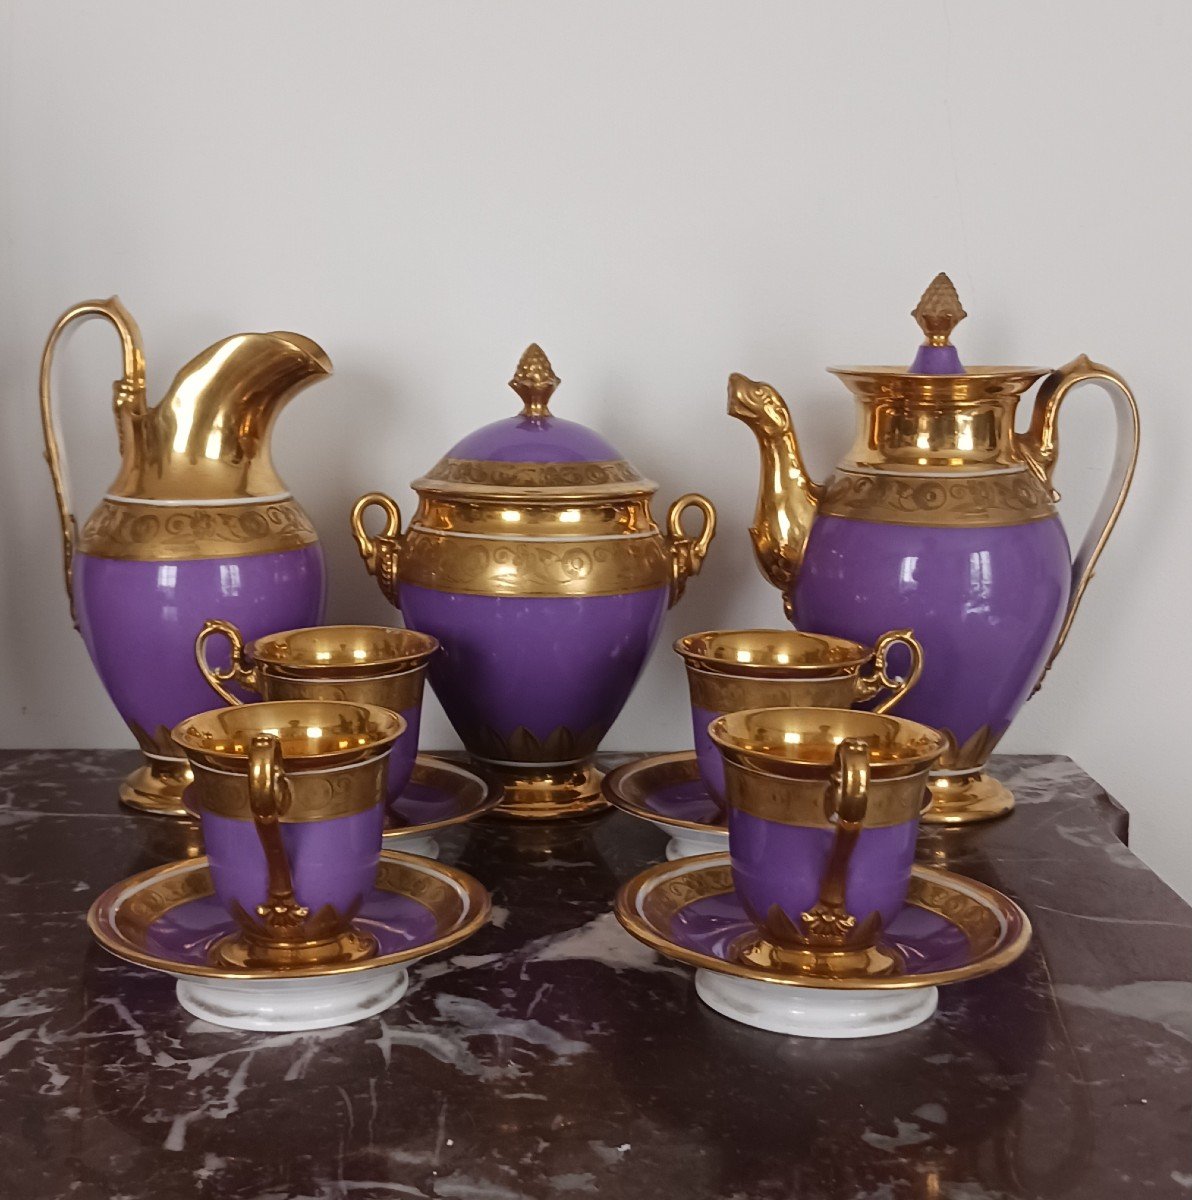 Duhamel - Porcelain Tea/coffee Set, Violet Background - Empire, Restoration Period